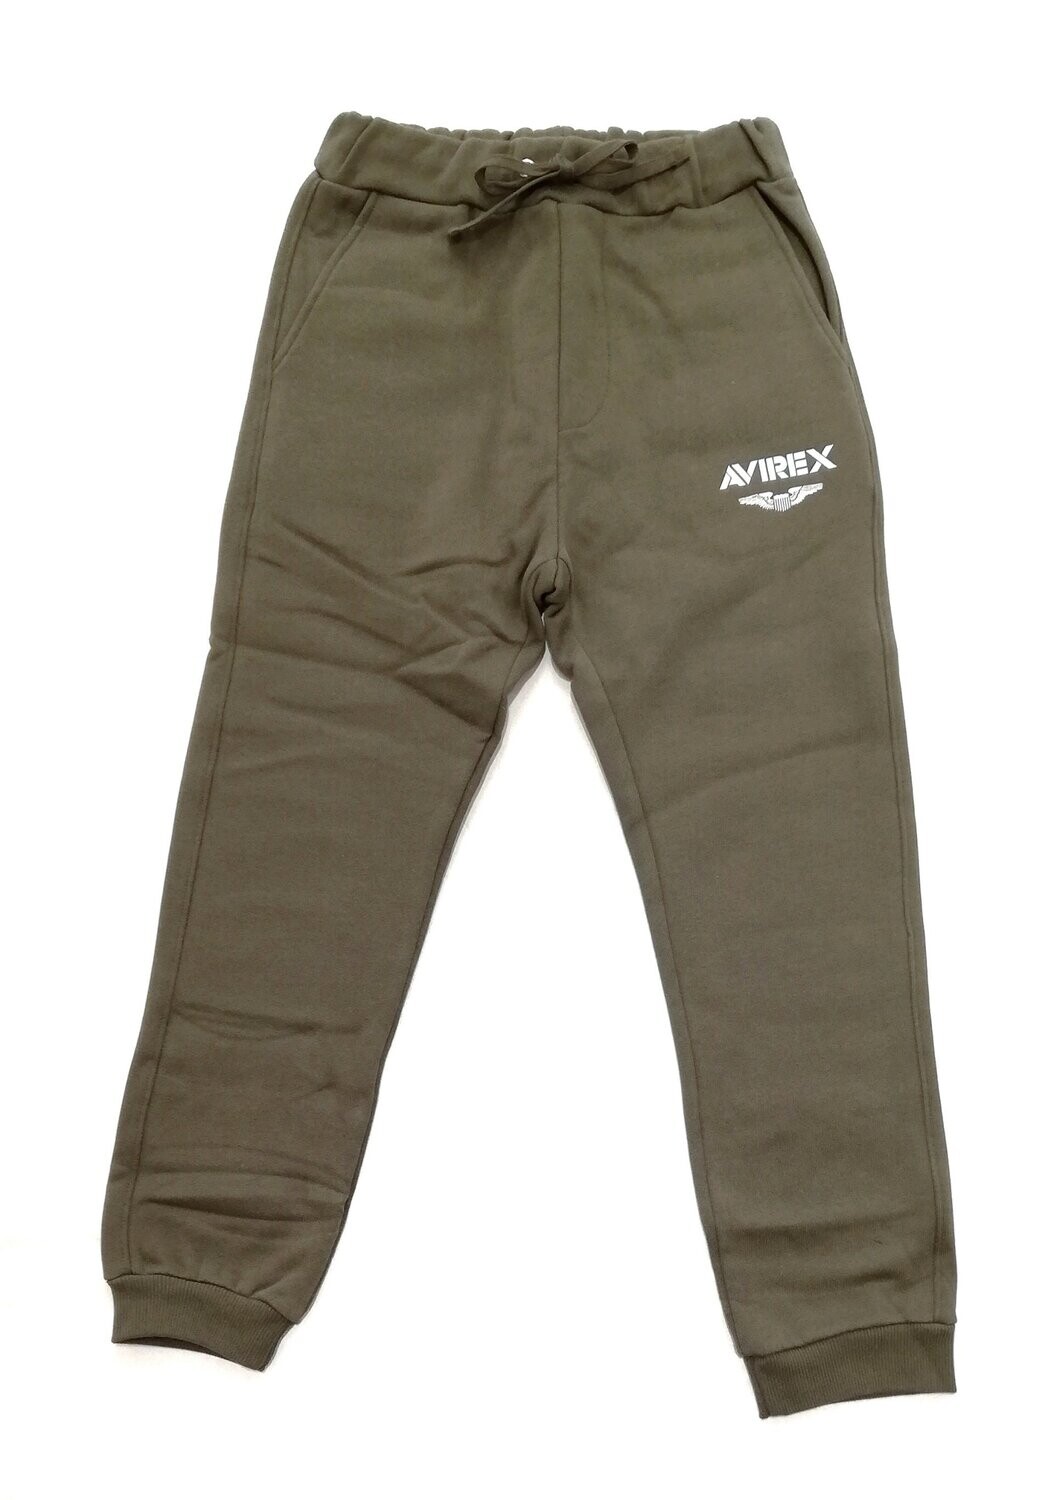 Avirex - Pantalone felpa verde militare con logo bianco, Size: 4 anni